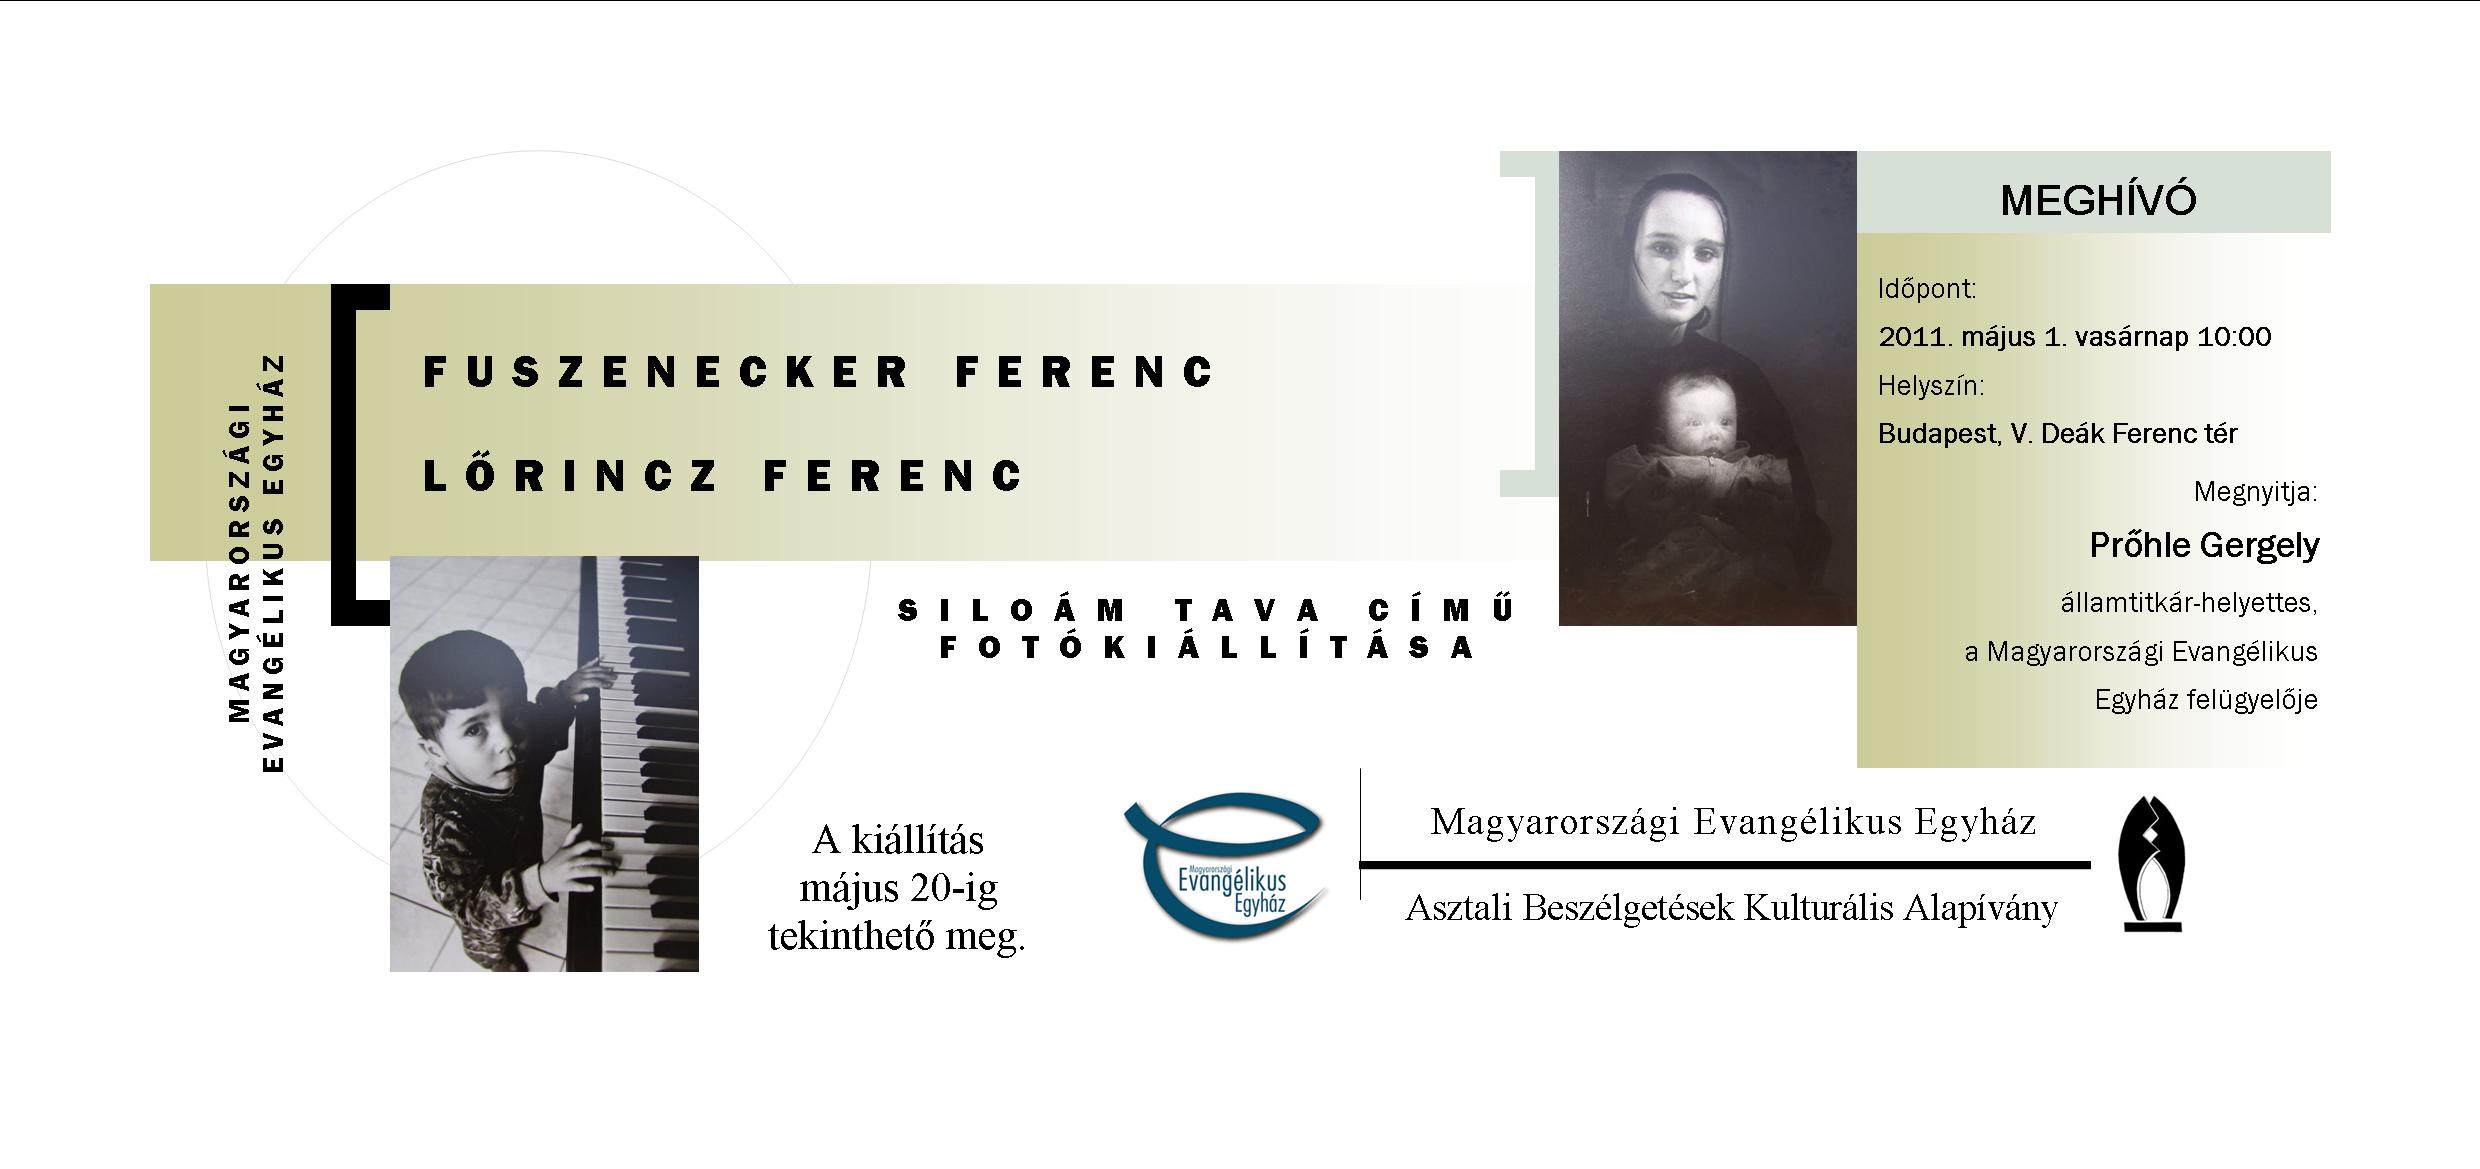 Fuszenecker Ferenc és Lőrincz Ferenc Siloám tava című fotókiállítása